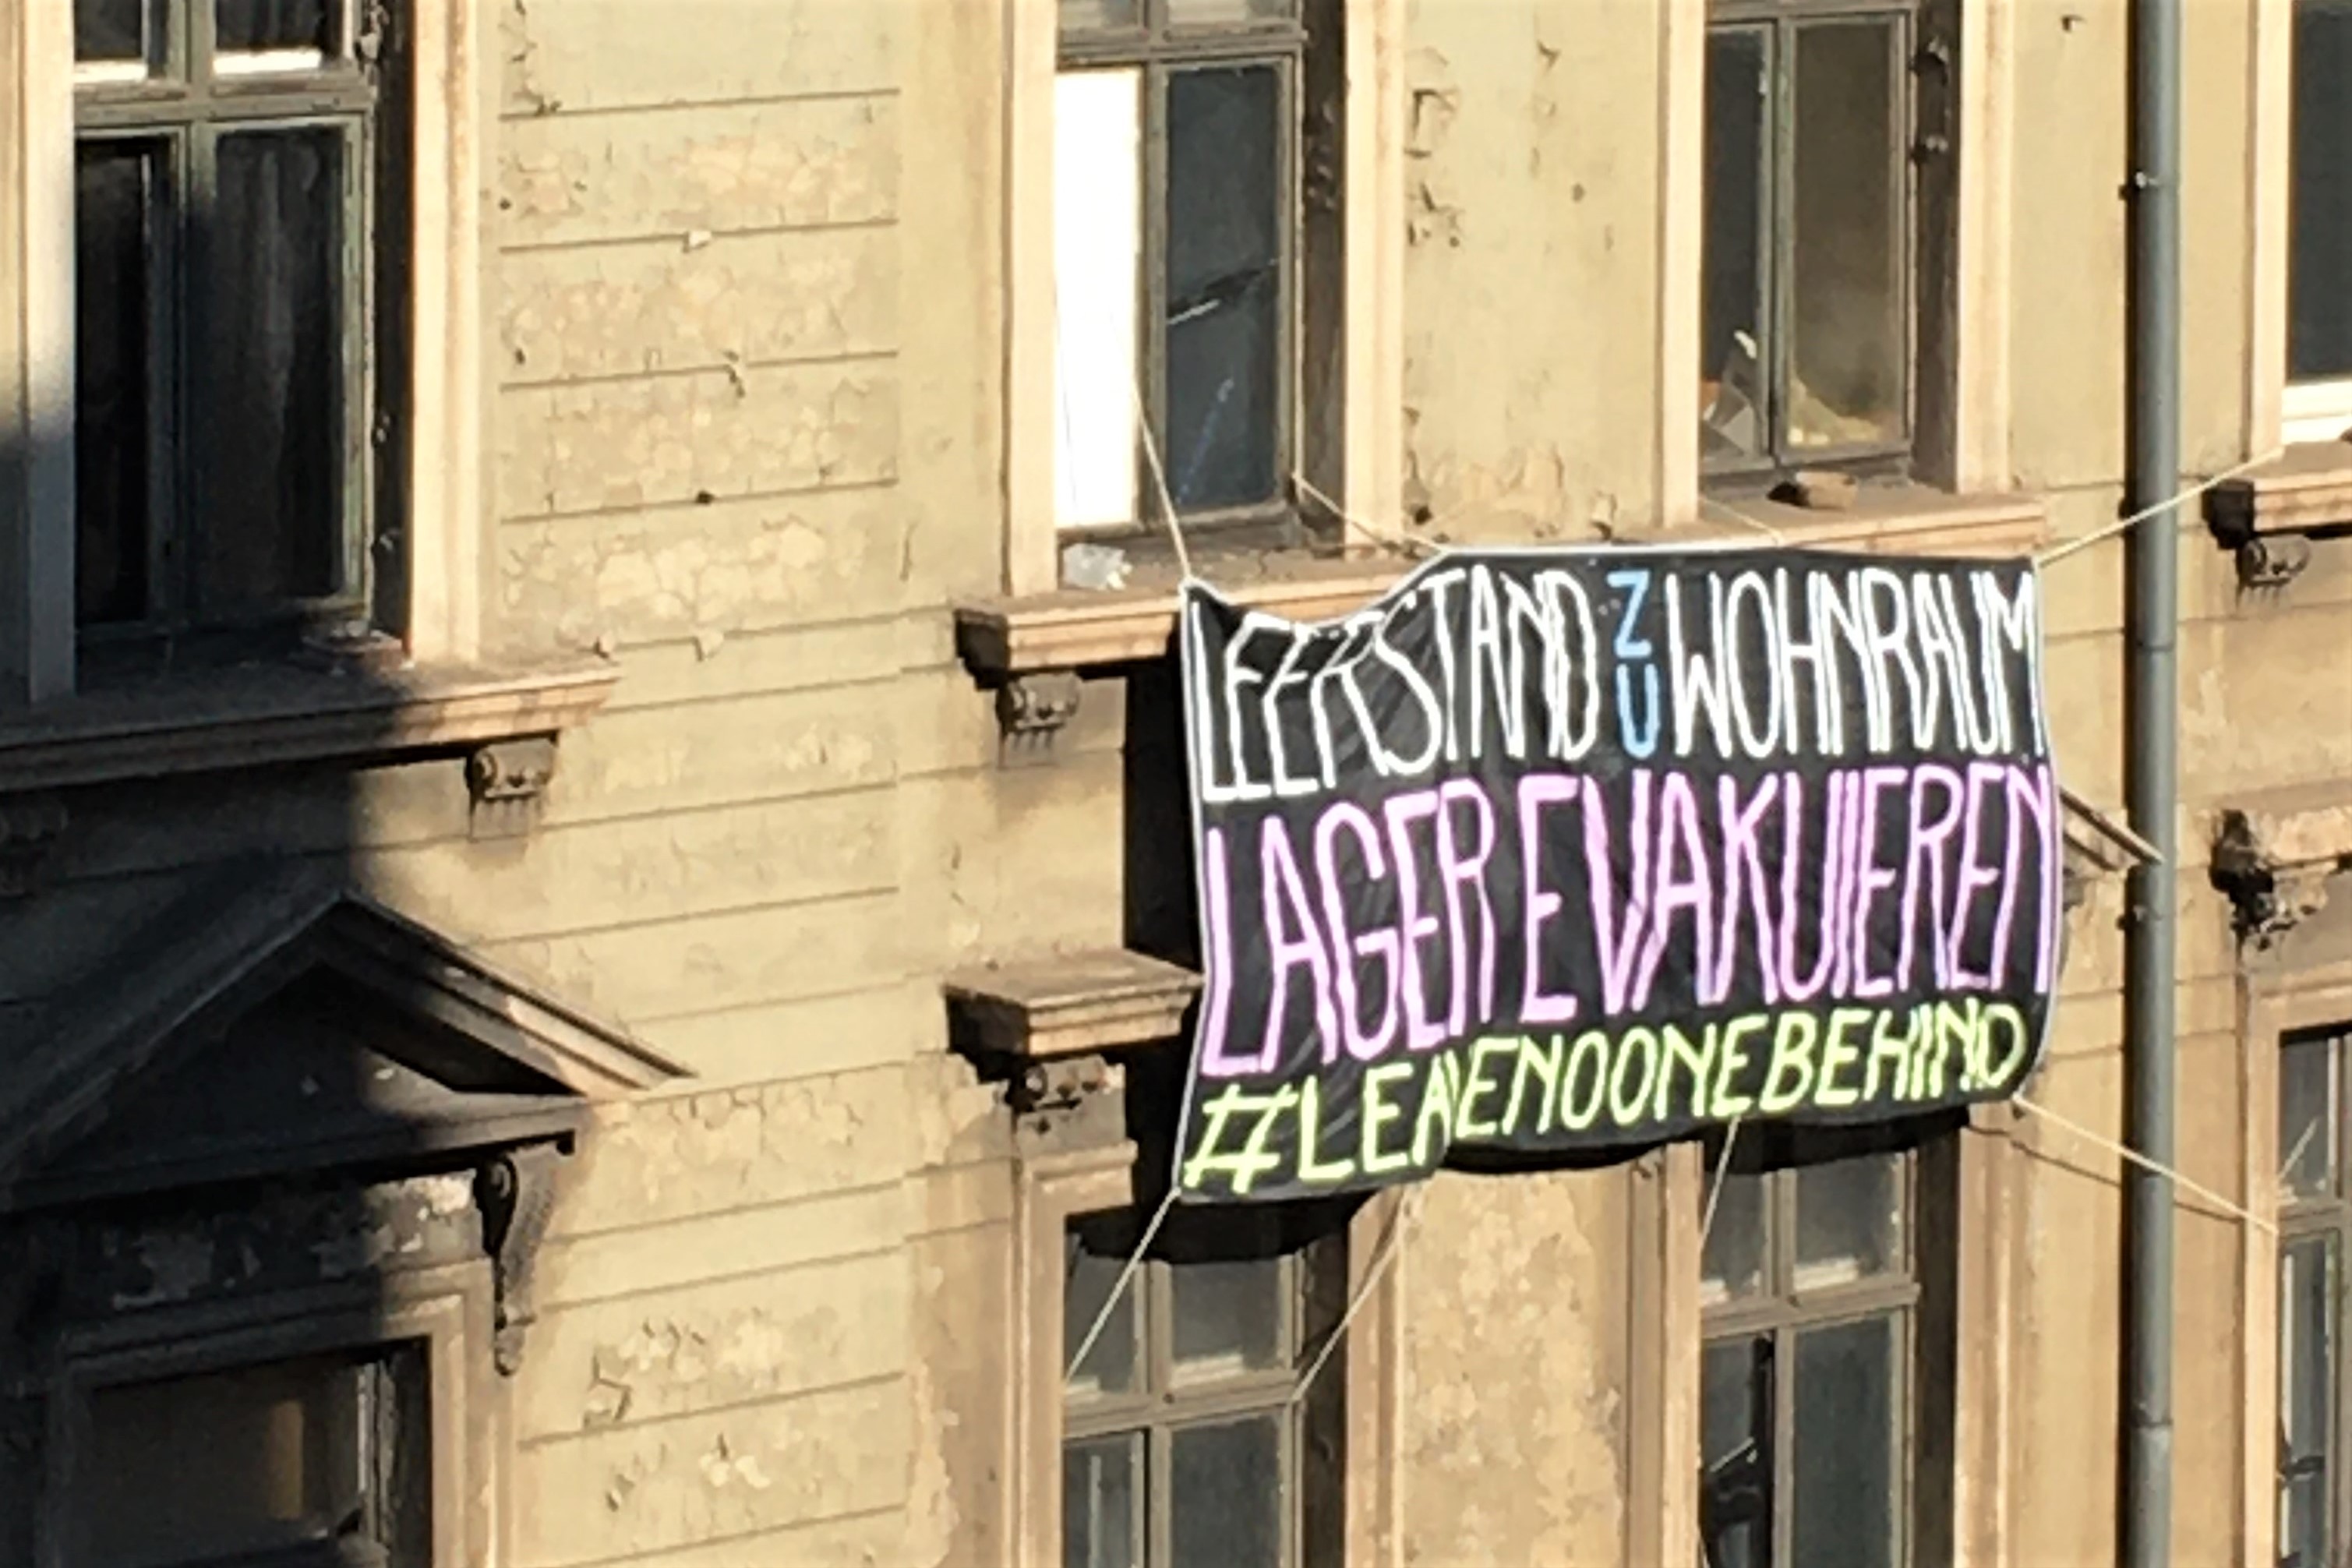 Banner 5 von 5 - Leerstand zu Wohnraum, Lager evakuieren - #leavenoonebehind